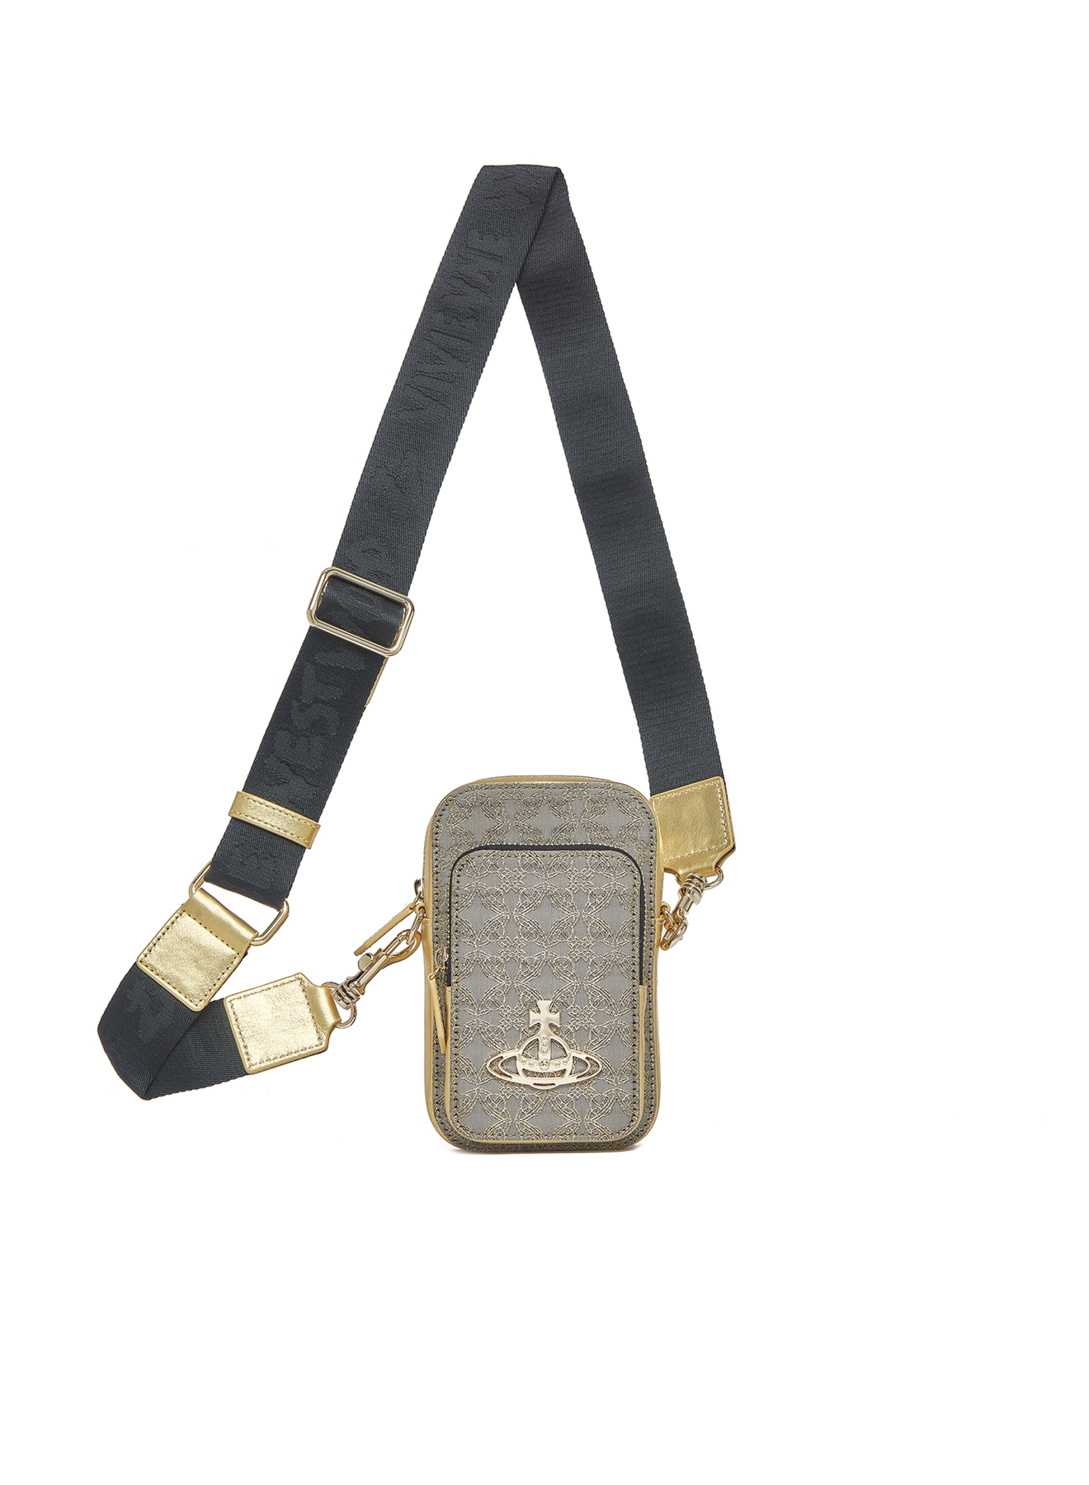 Vivienne Westwood Phone Bag